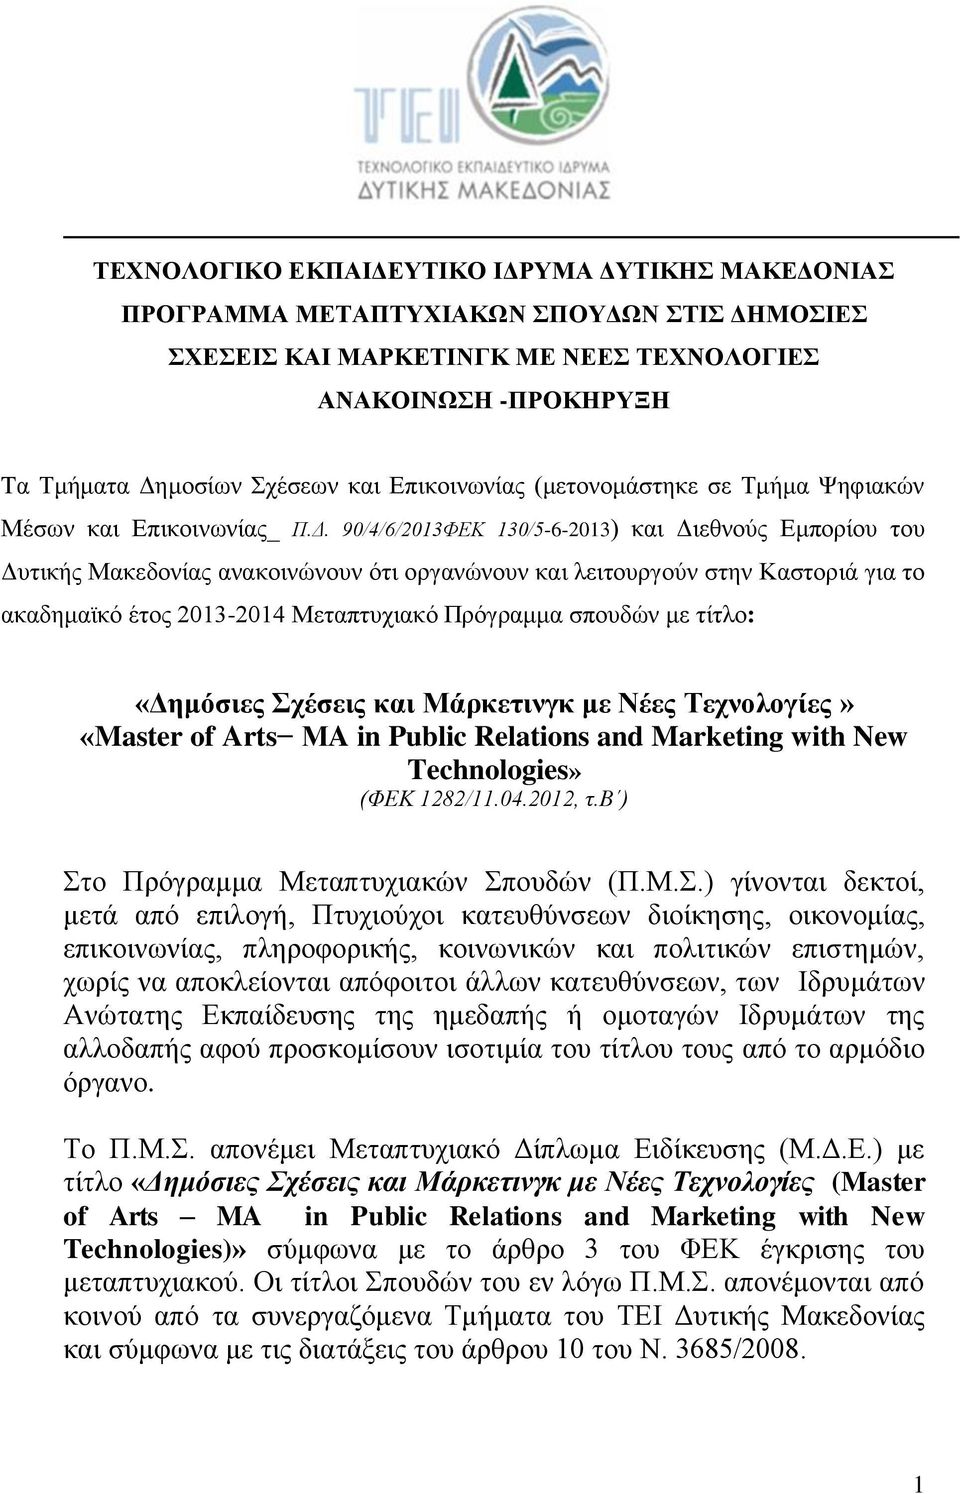 90/4/6/2013ΦΕΚ 130/5-6-2013) και Διεθνούς Εμπορίου του Δυτικής Μακεδονίας ανακοινώνουν ότι οργανώνουν και λειτουργούν στην Καστοριά για το ακαδημαϊκό έτος 2013-2014 Μεταπτυχιακό Πρόγραμμα σπουδών με